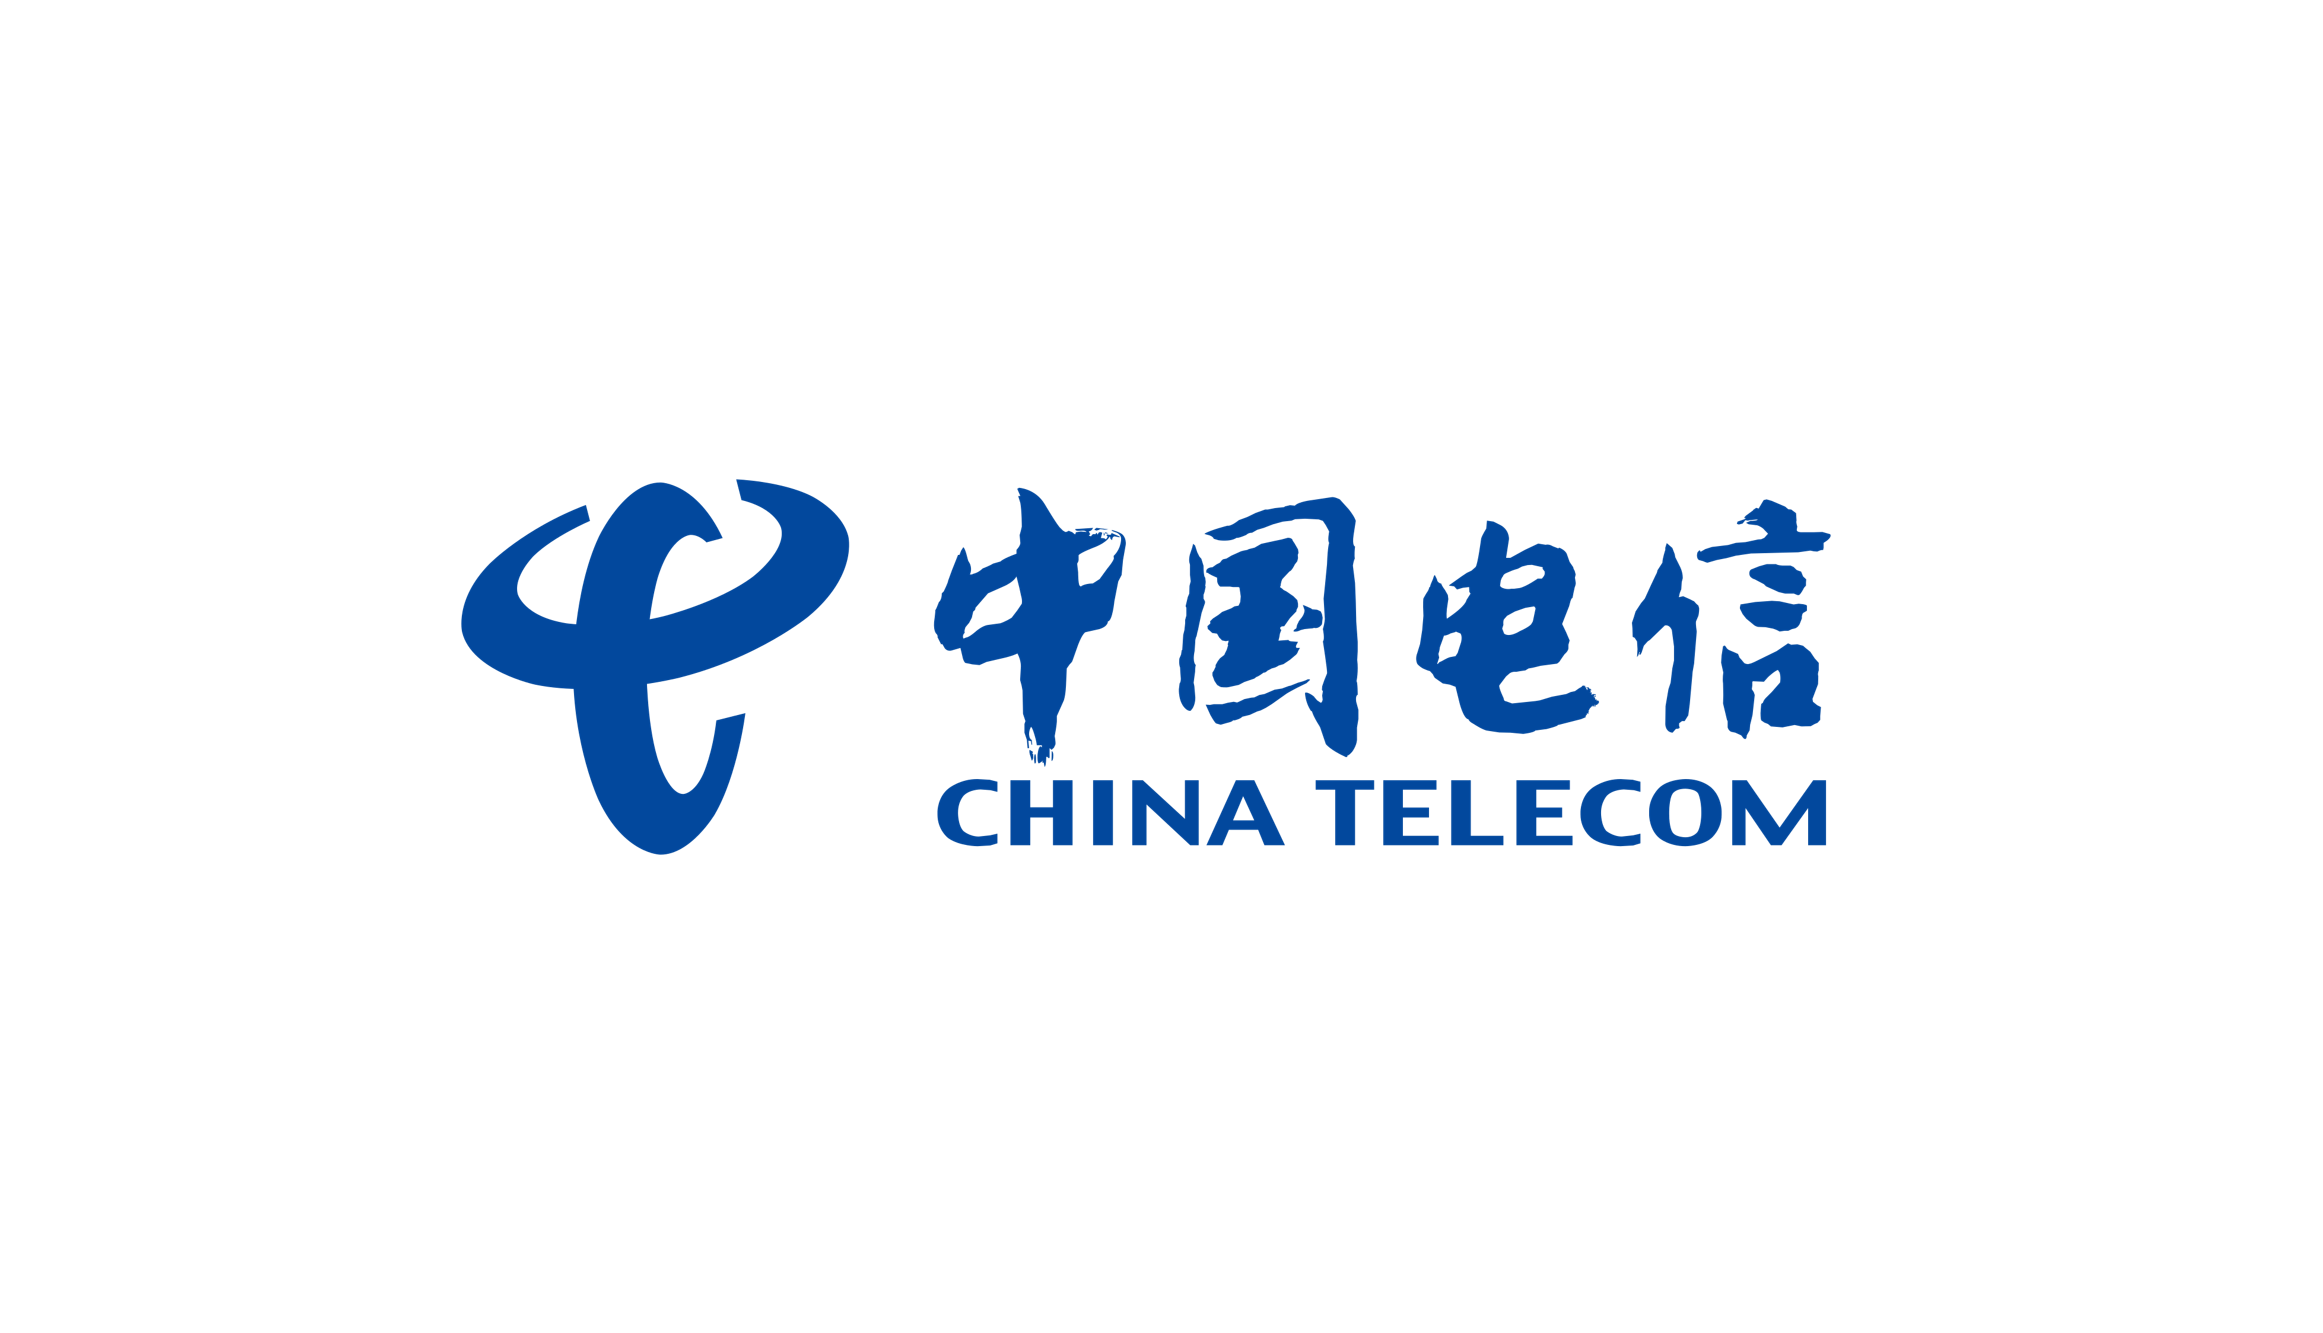 WANG Fan - China Telecom